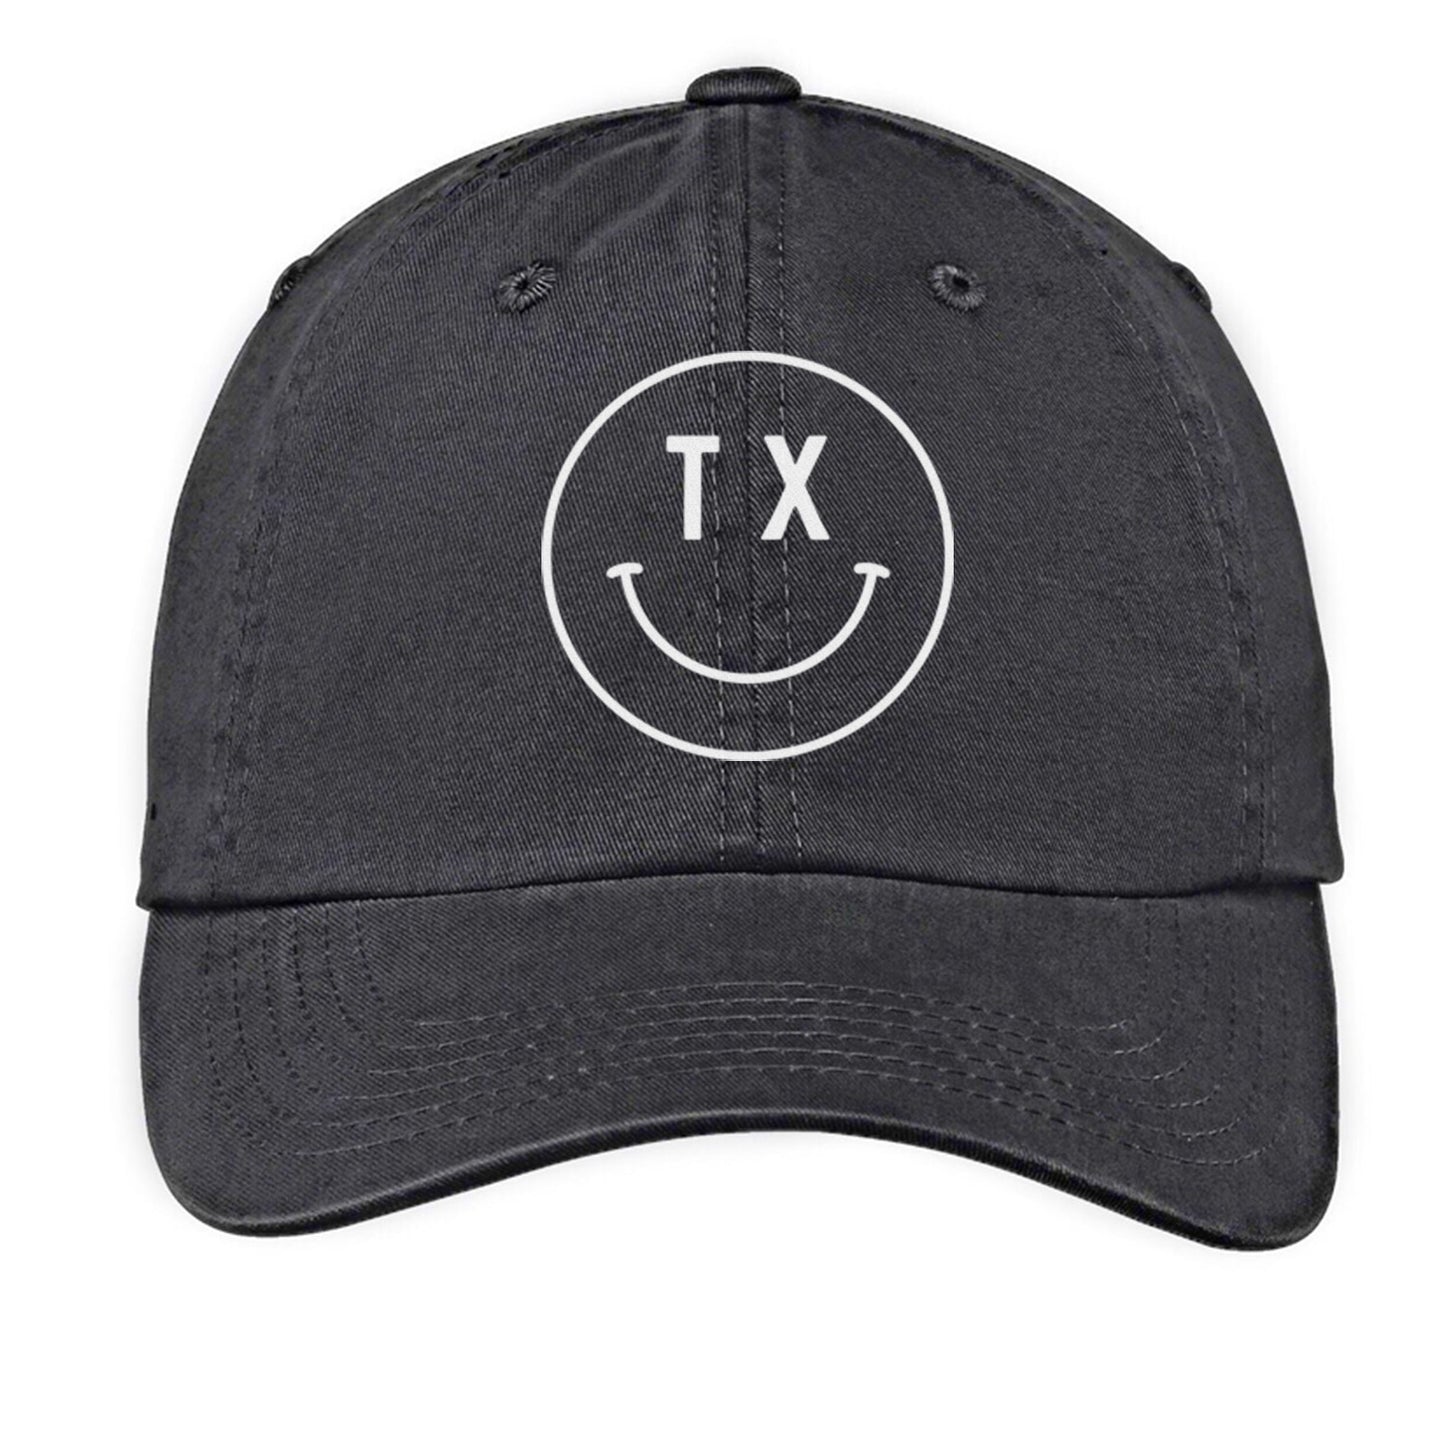 TX Smiley Face Baseball Cap